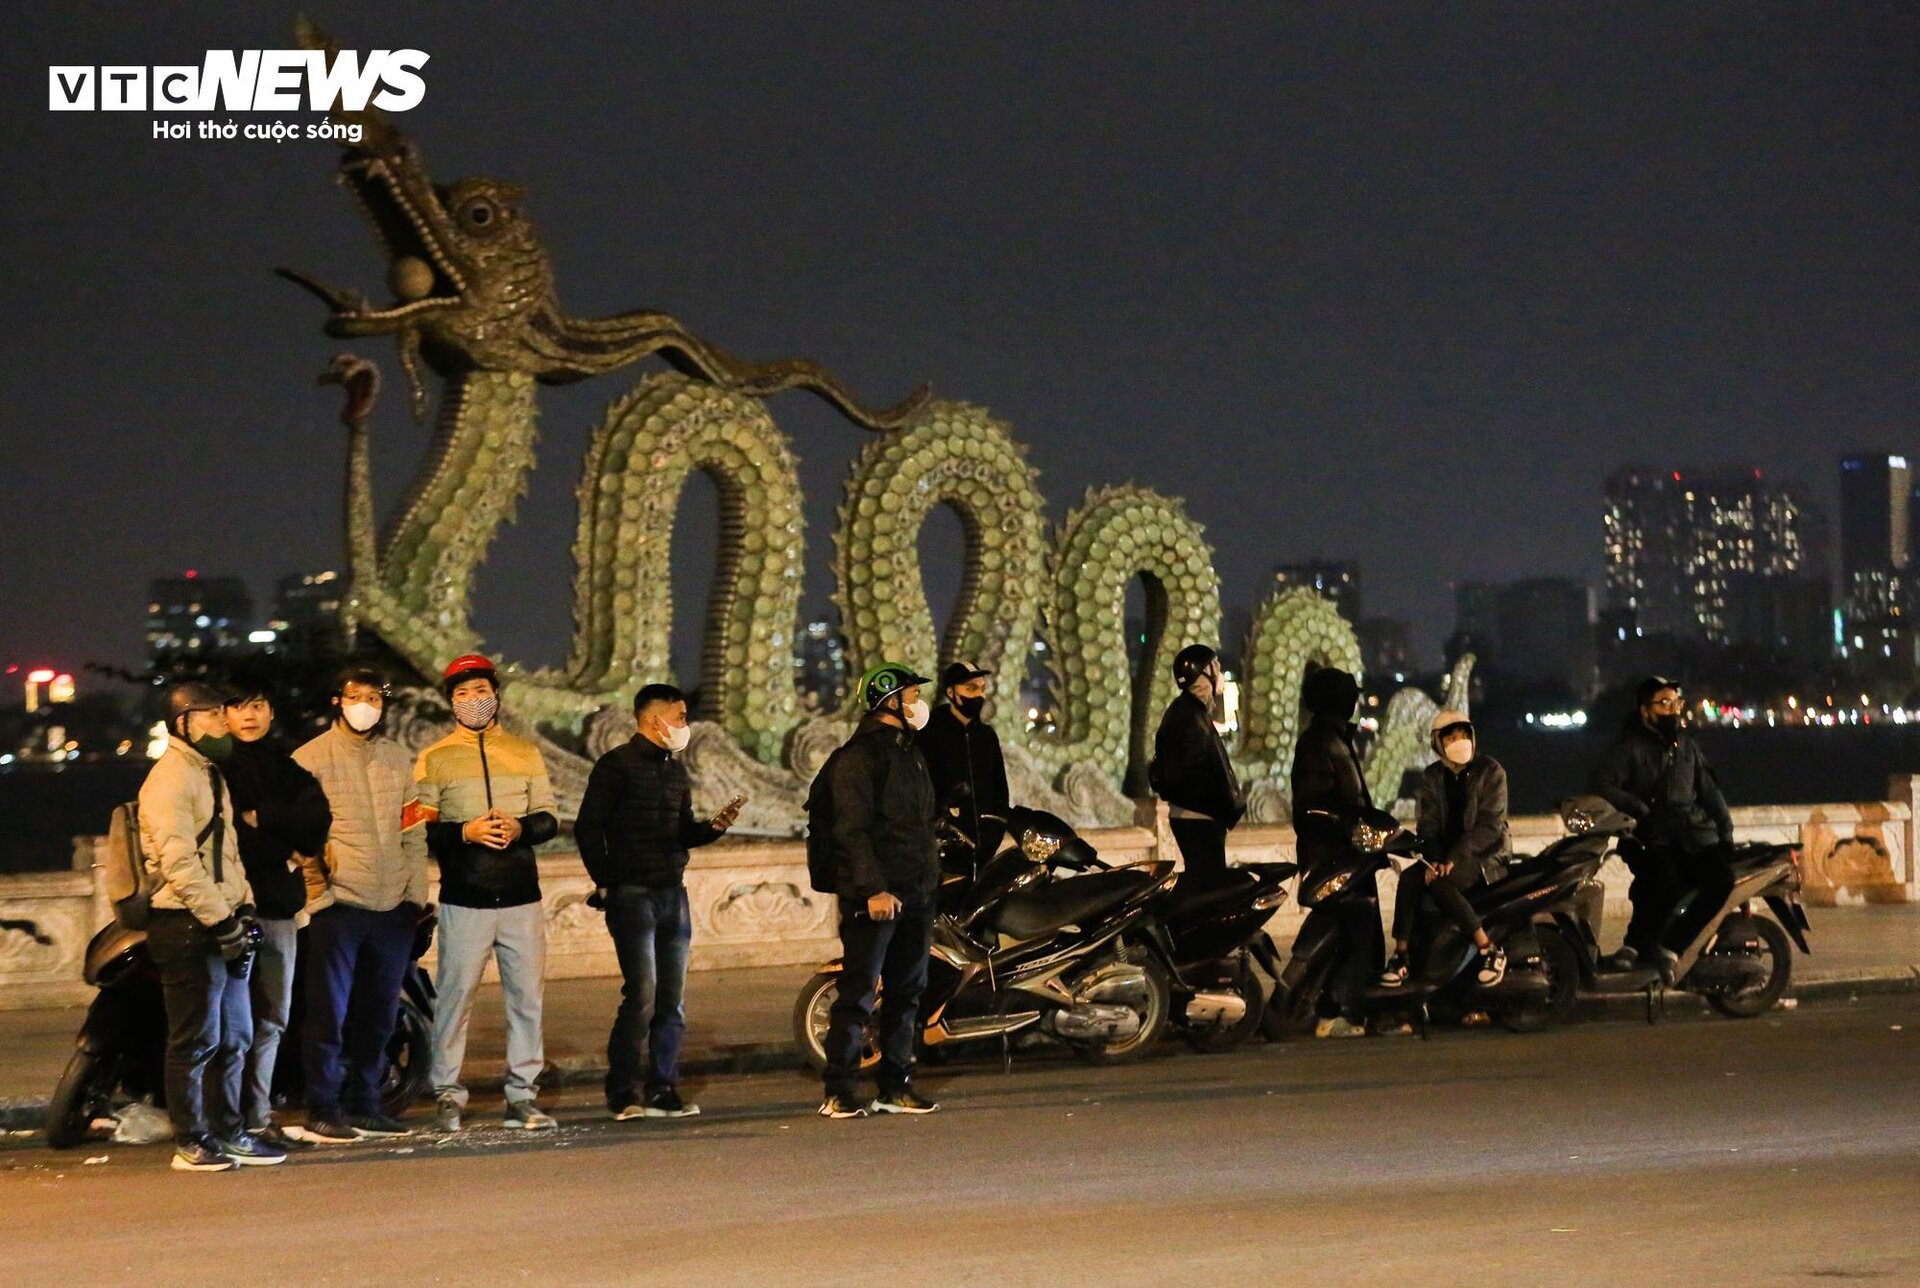 Cảnh sát 141 hóa trang đón lõng các 'quái xế' độ xe, nẹt pô trên phố Hà Nội - Ảnh 2.